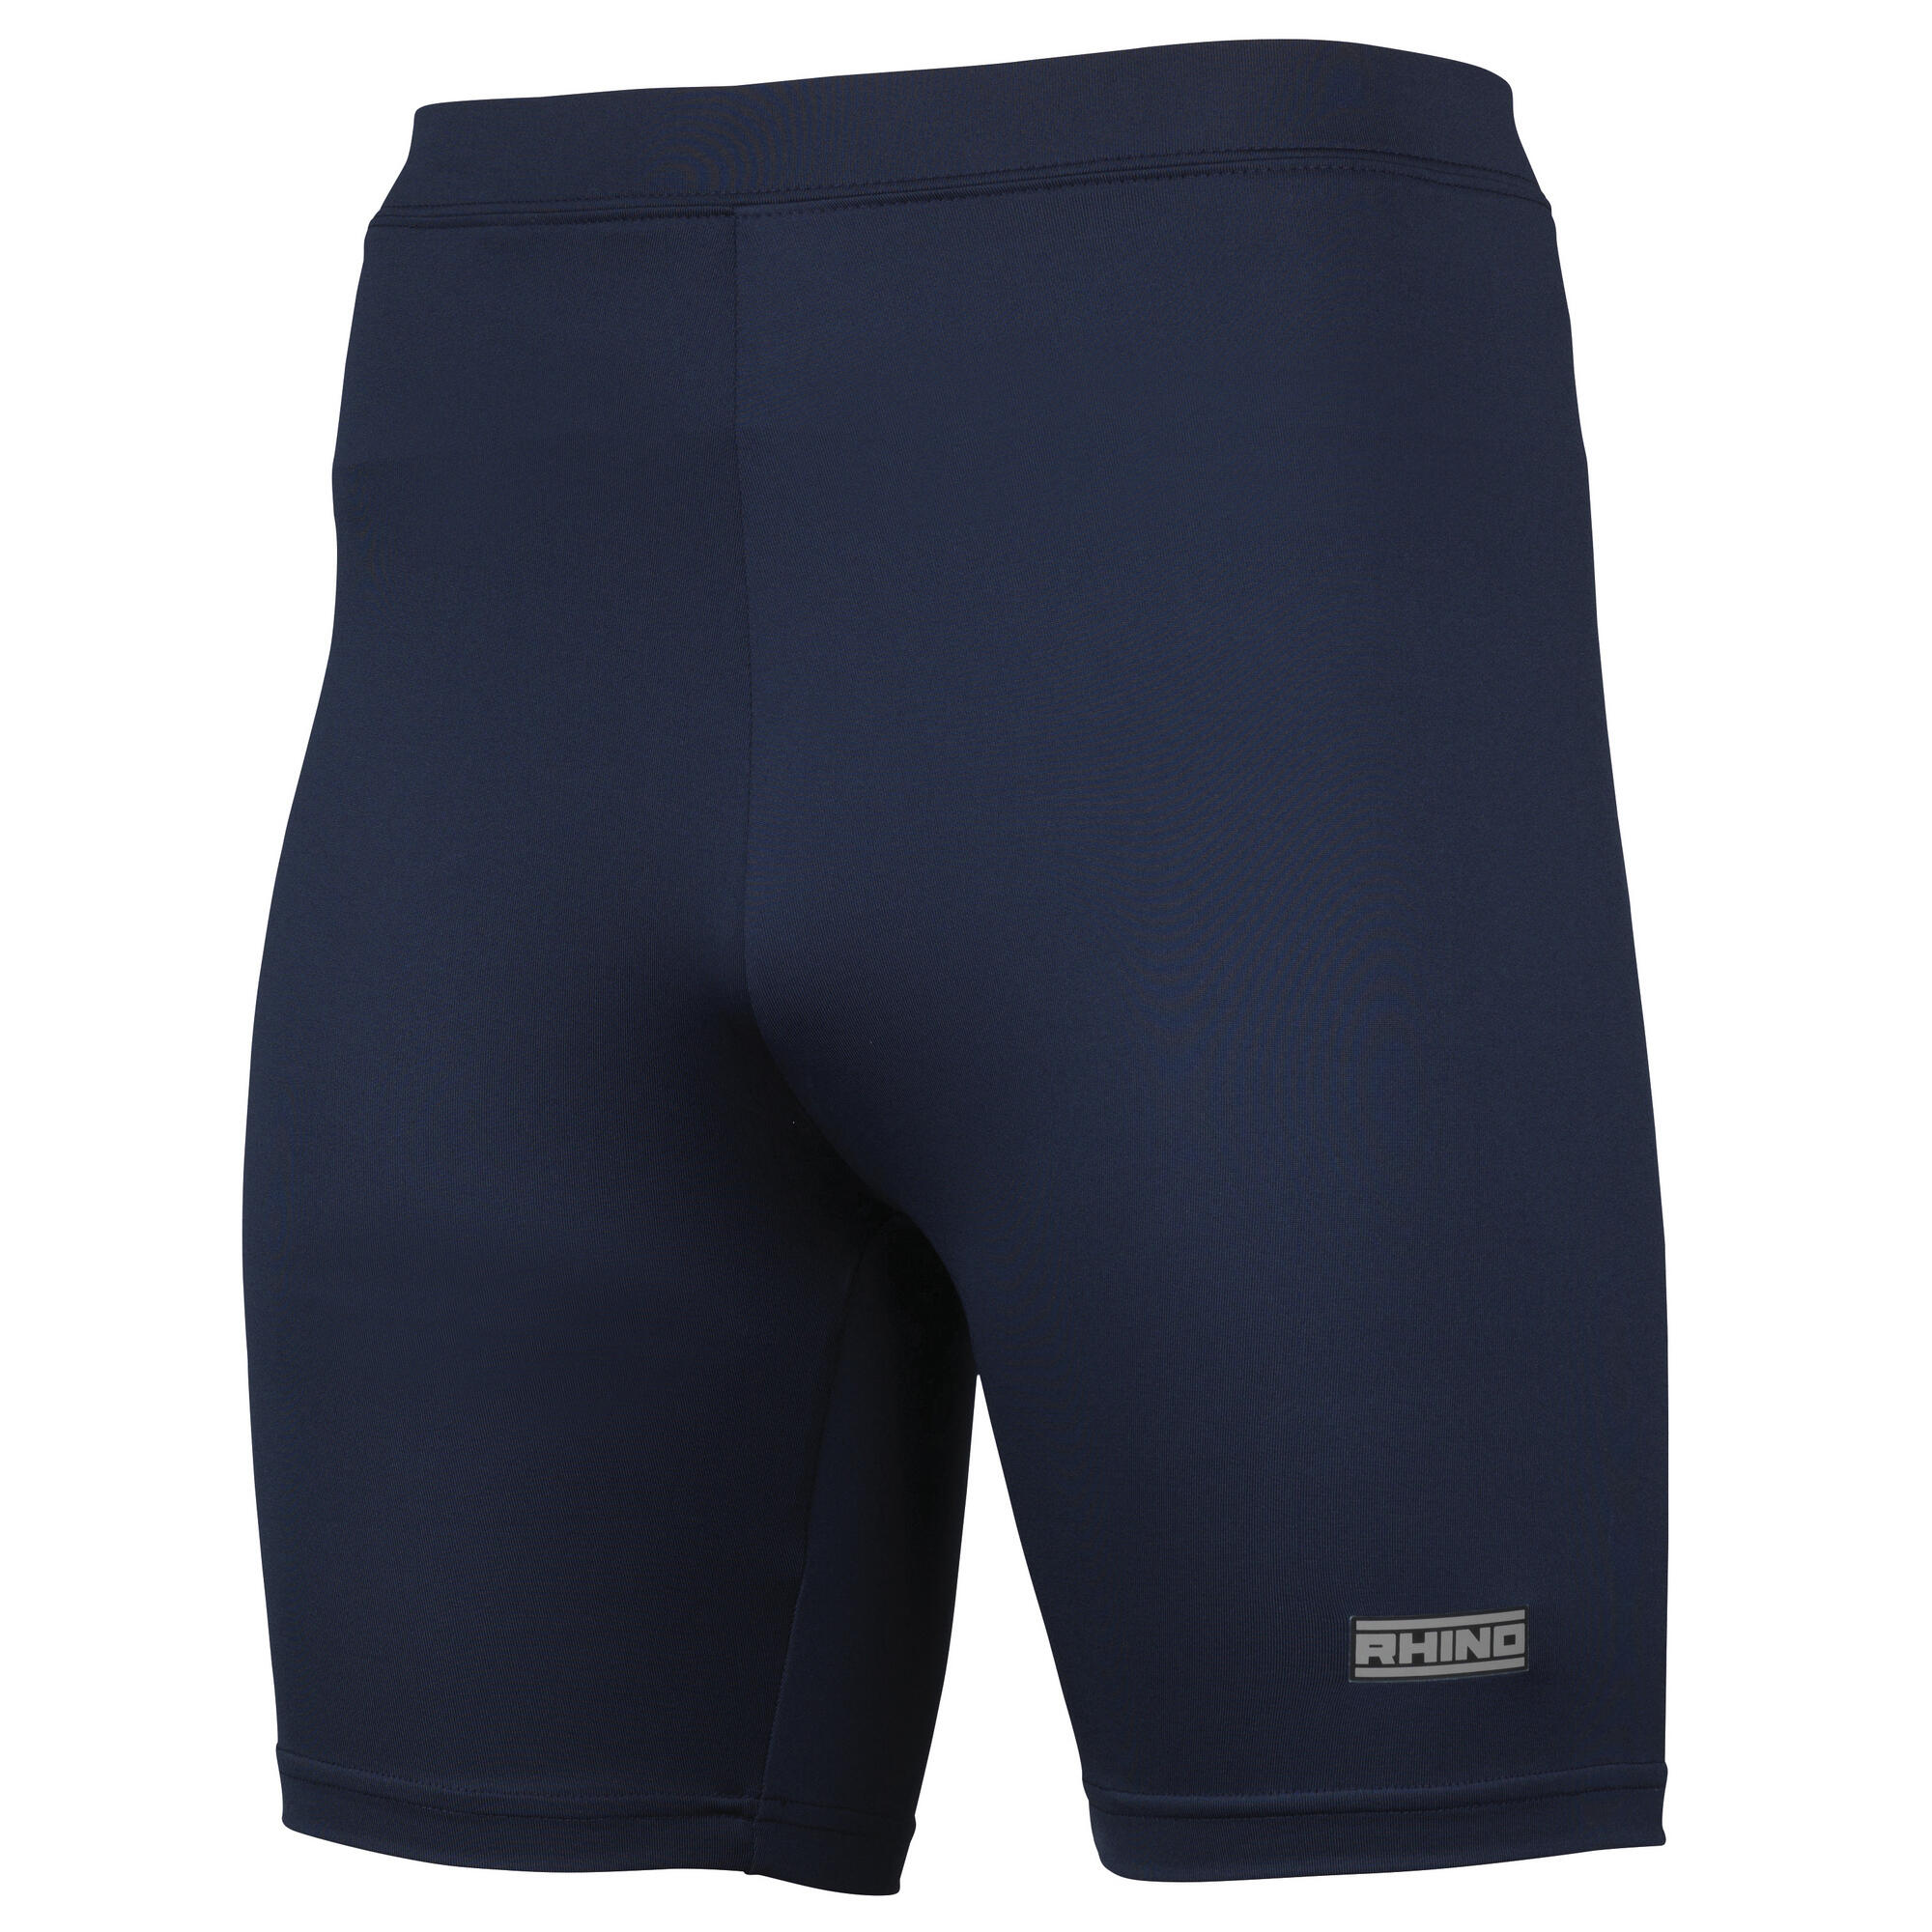 RHINO Mens Sports Base Layer Shorts (Navy)